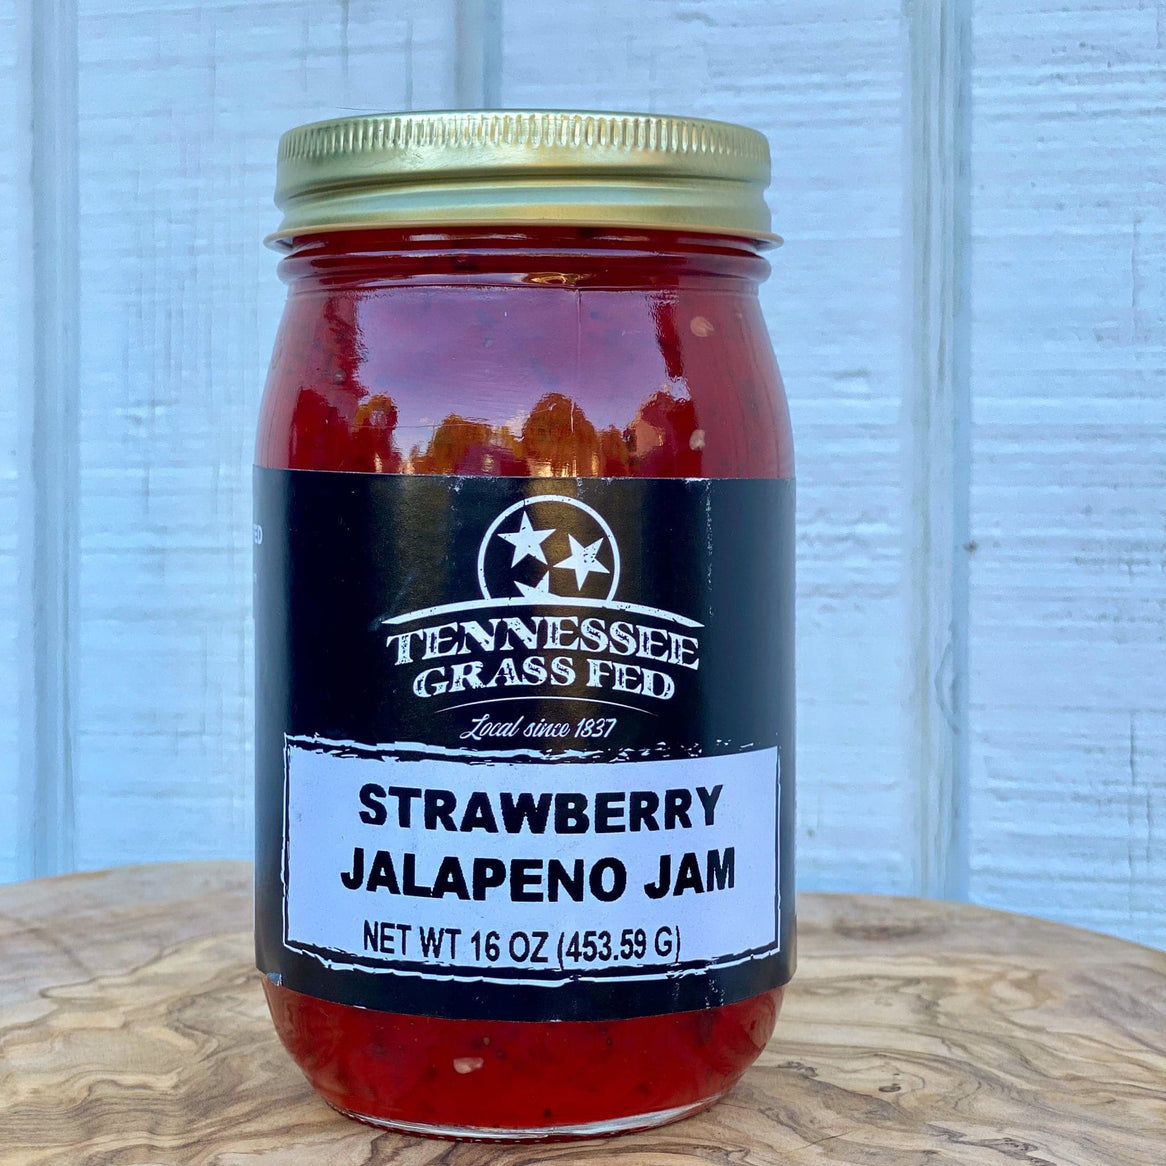 Strawberry Jalapeño Jam